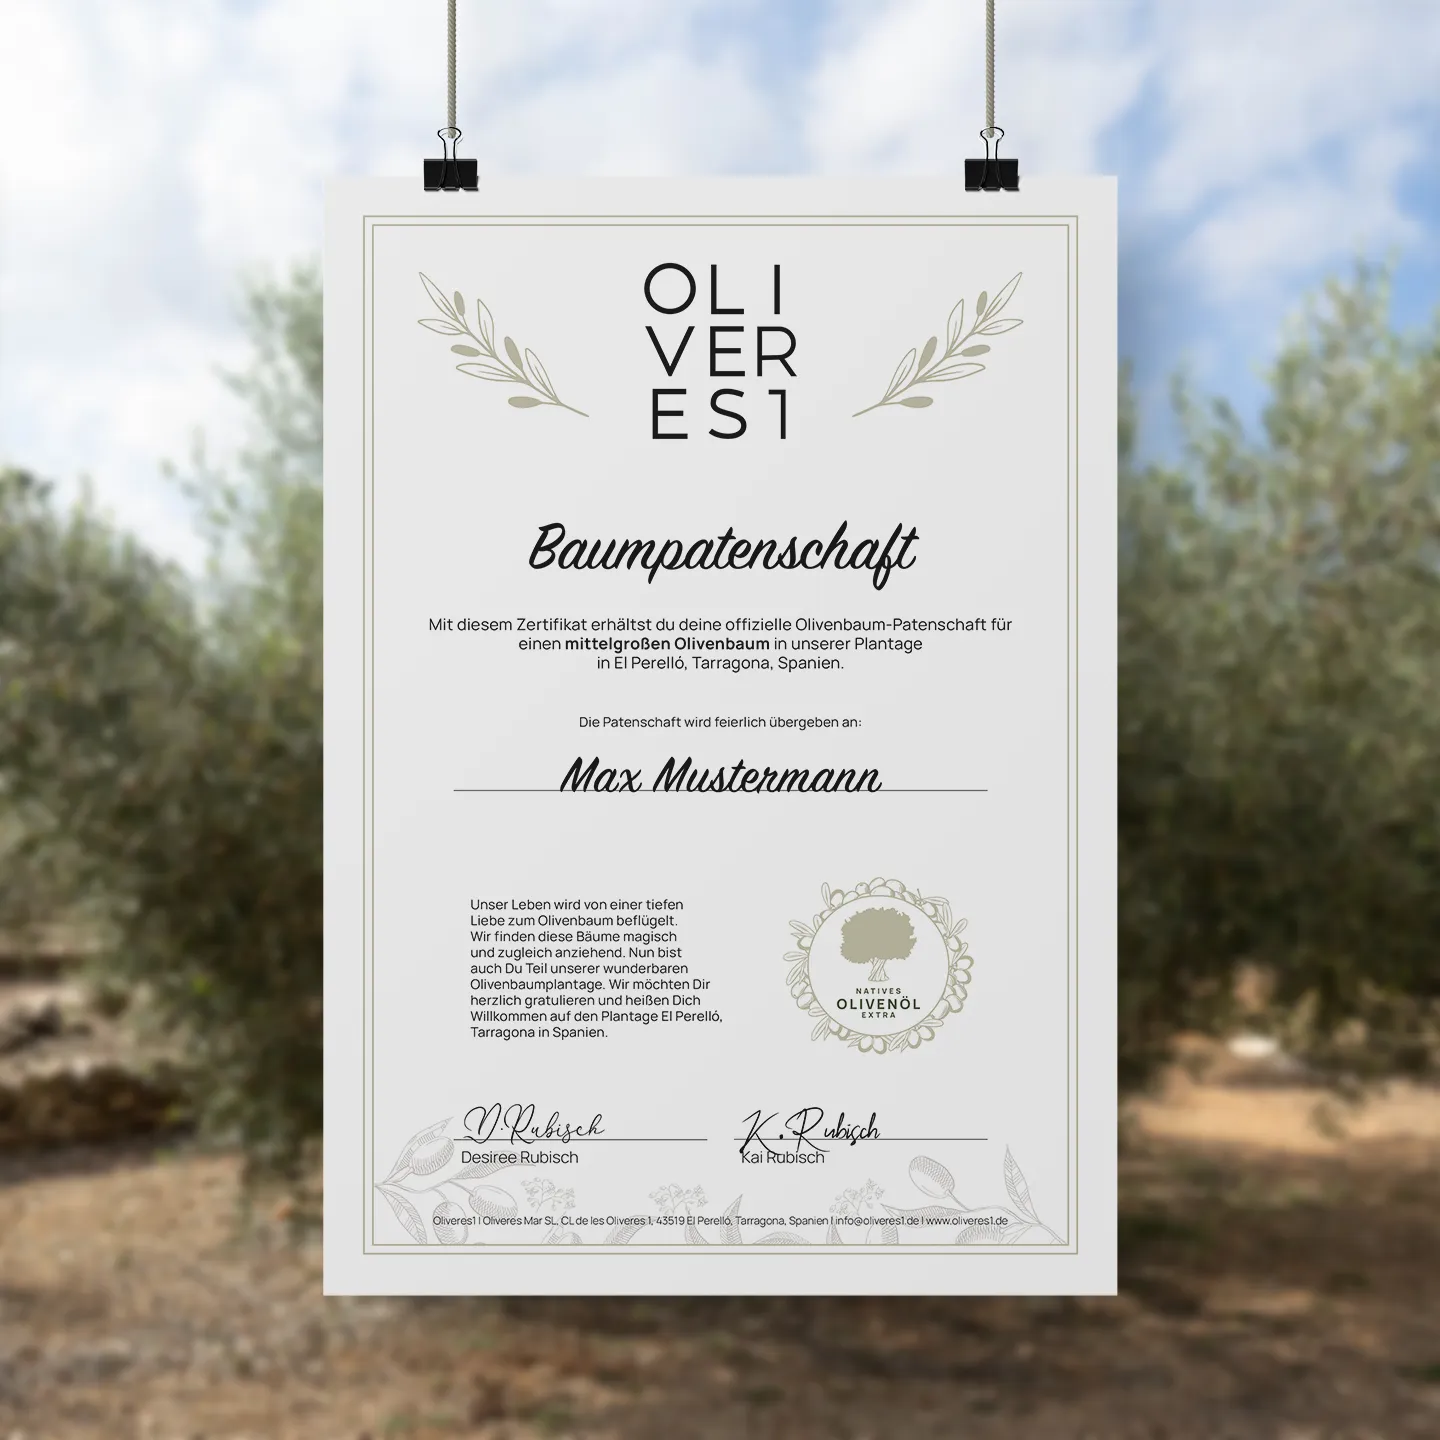 Baumpatenschaftszertifikat für einen mittelgroßen Olivenbaum von Oliveres1